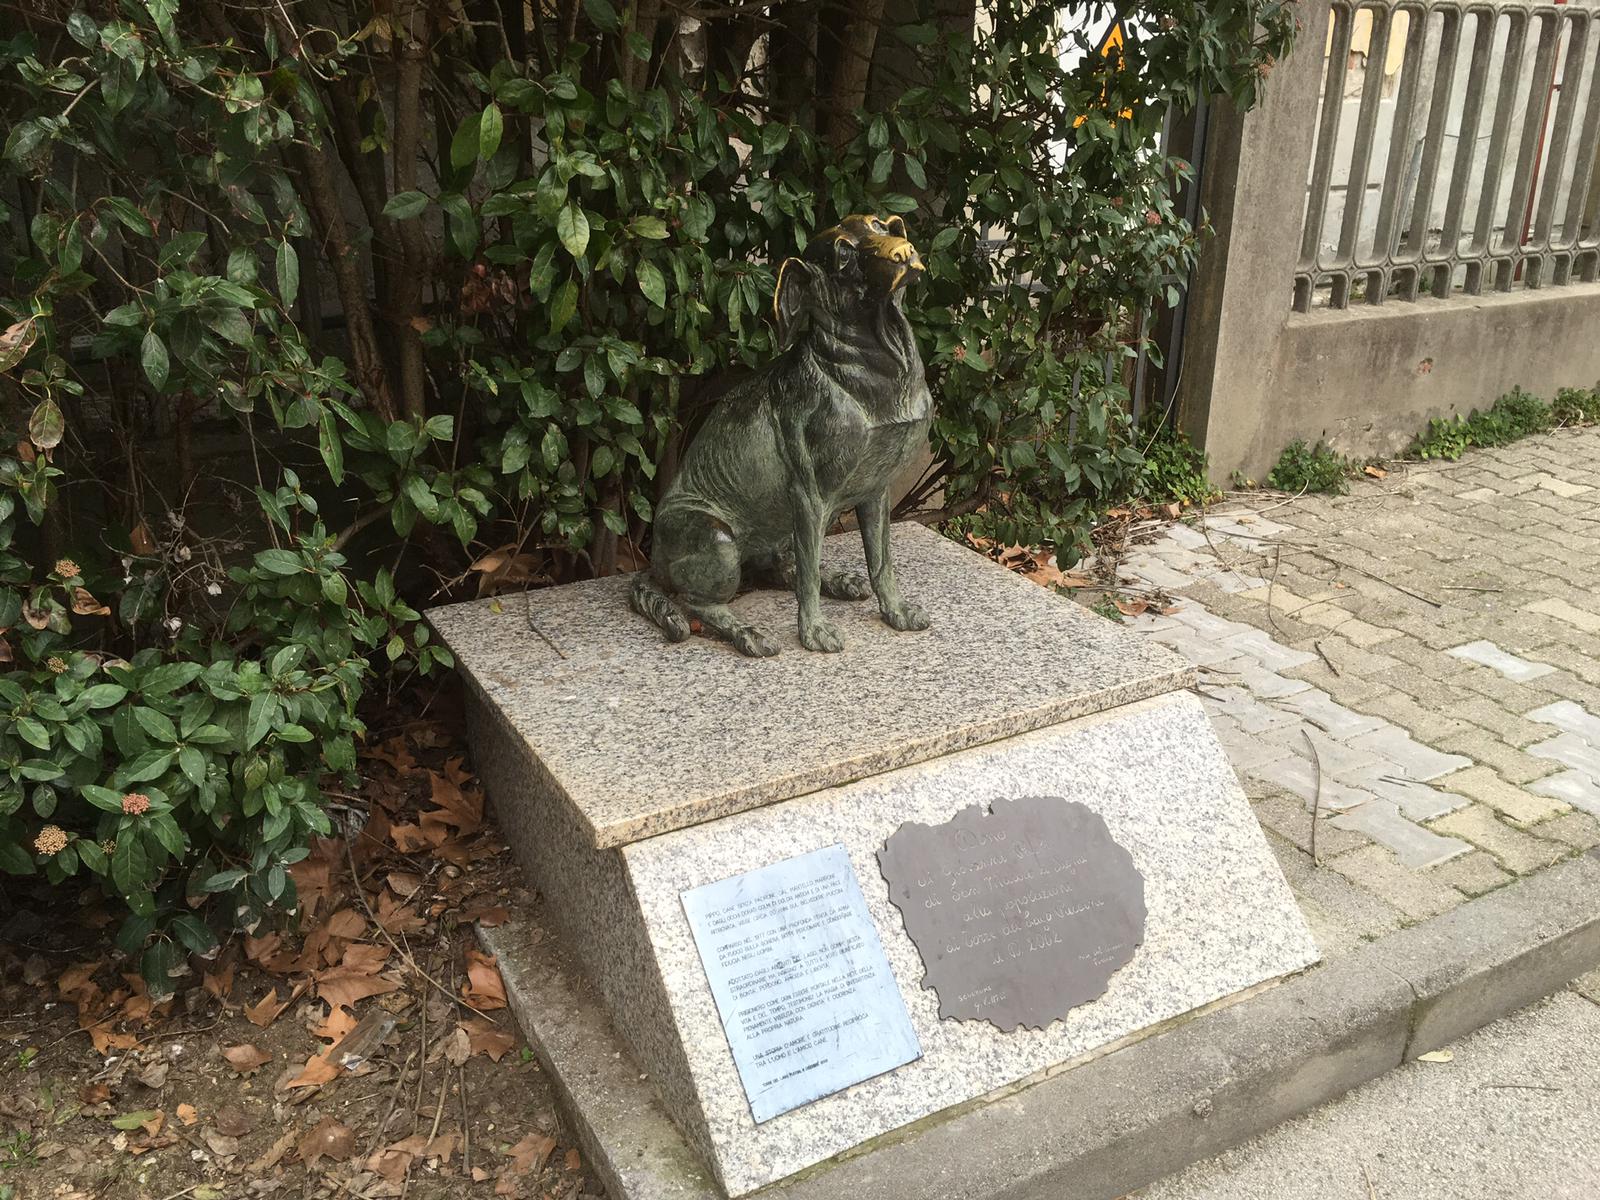 A sculpture of a dog